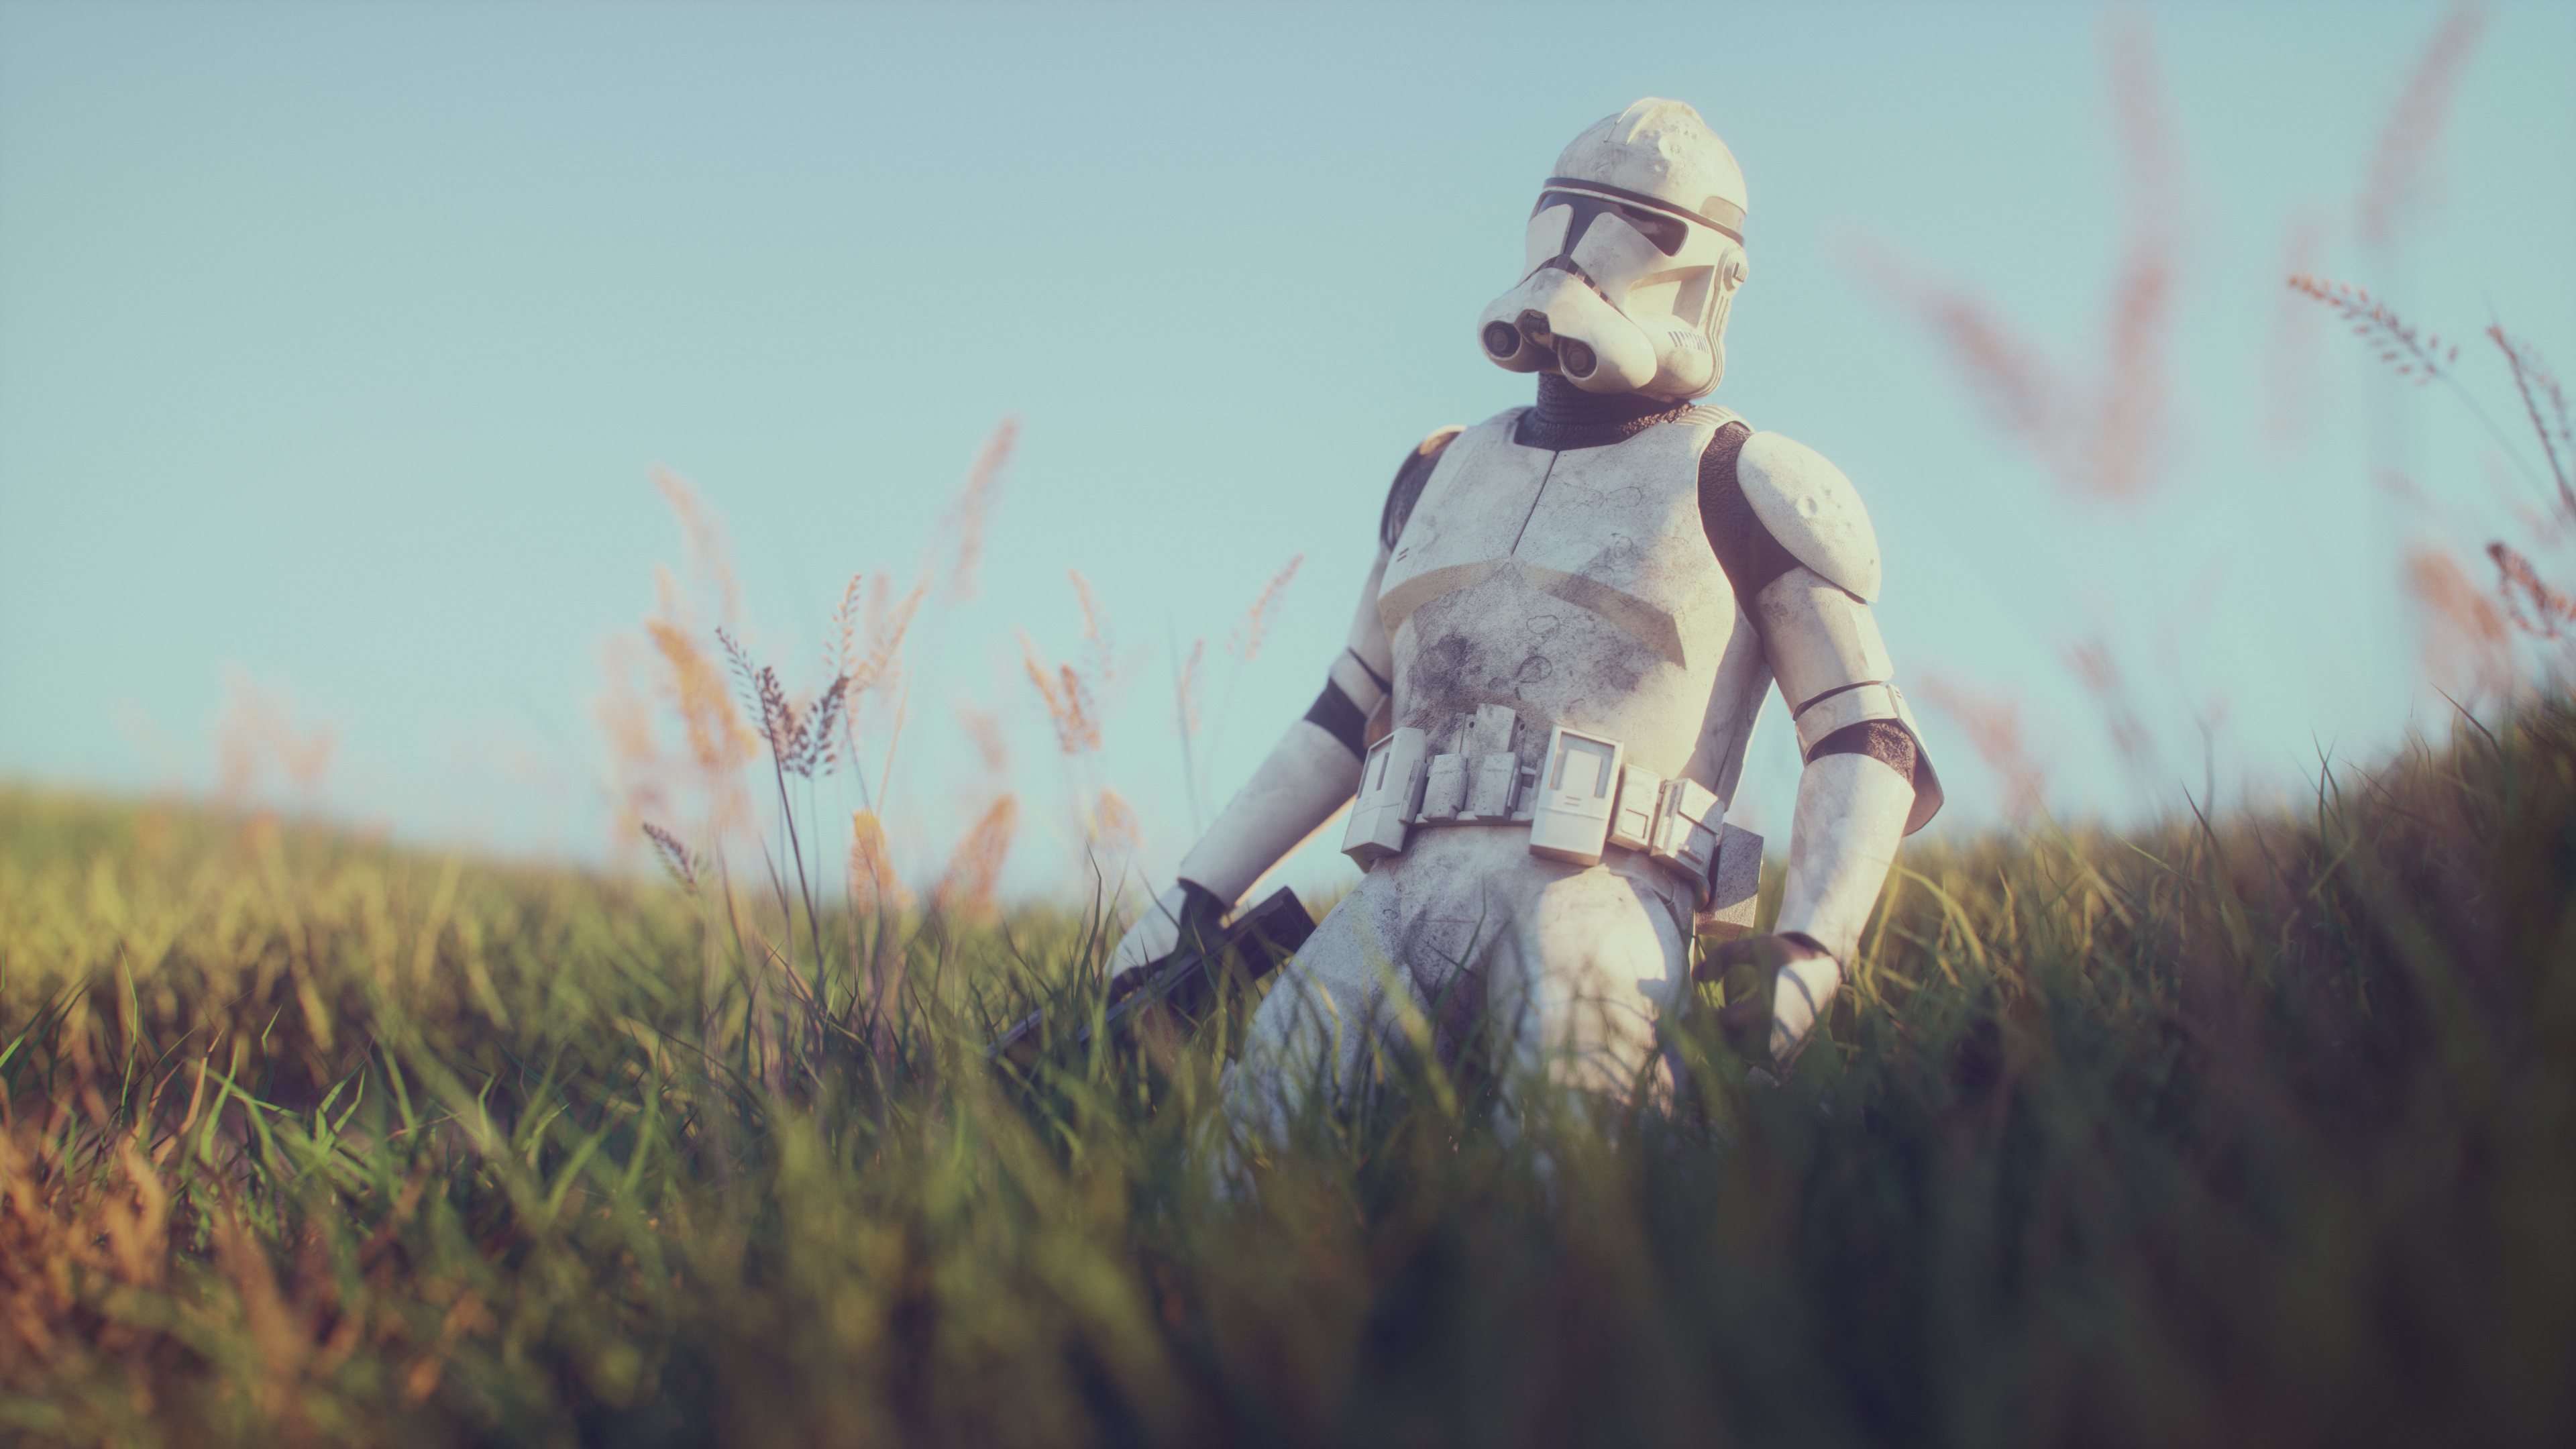 sci fi, star wars, clone trooper, figurine Smartphone Background